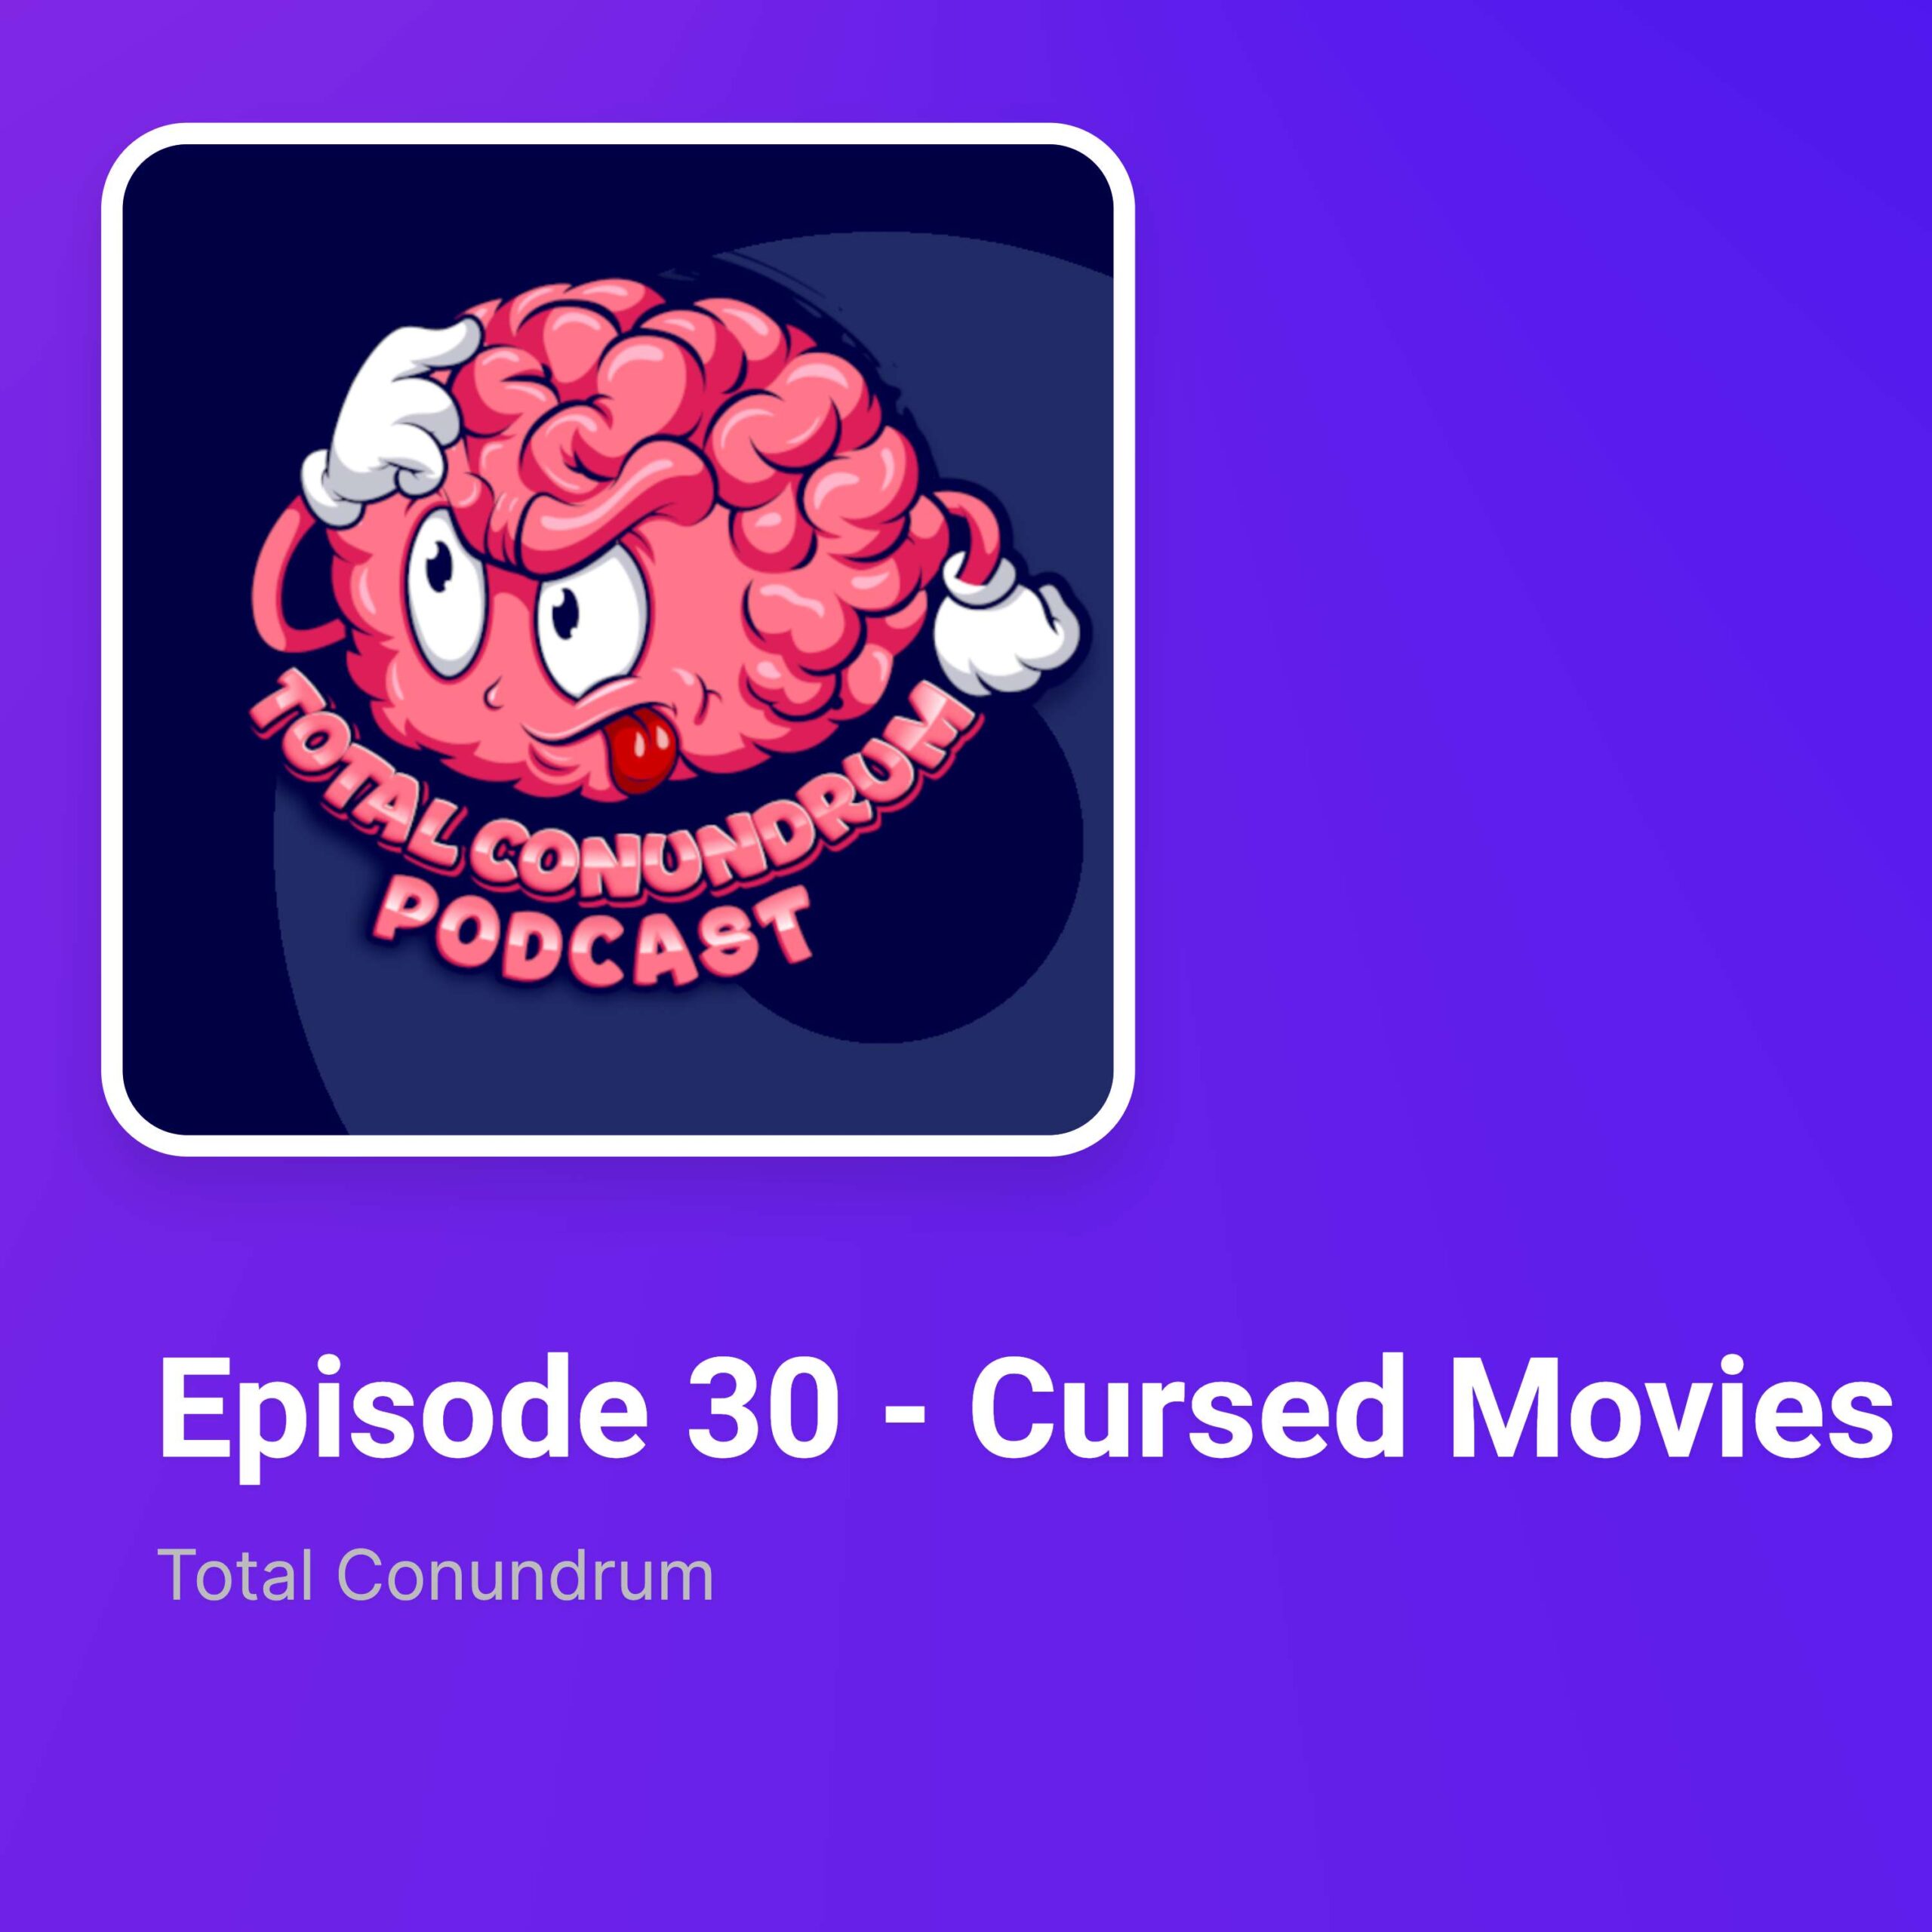 Episode 30 - Cursed Movies